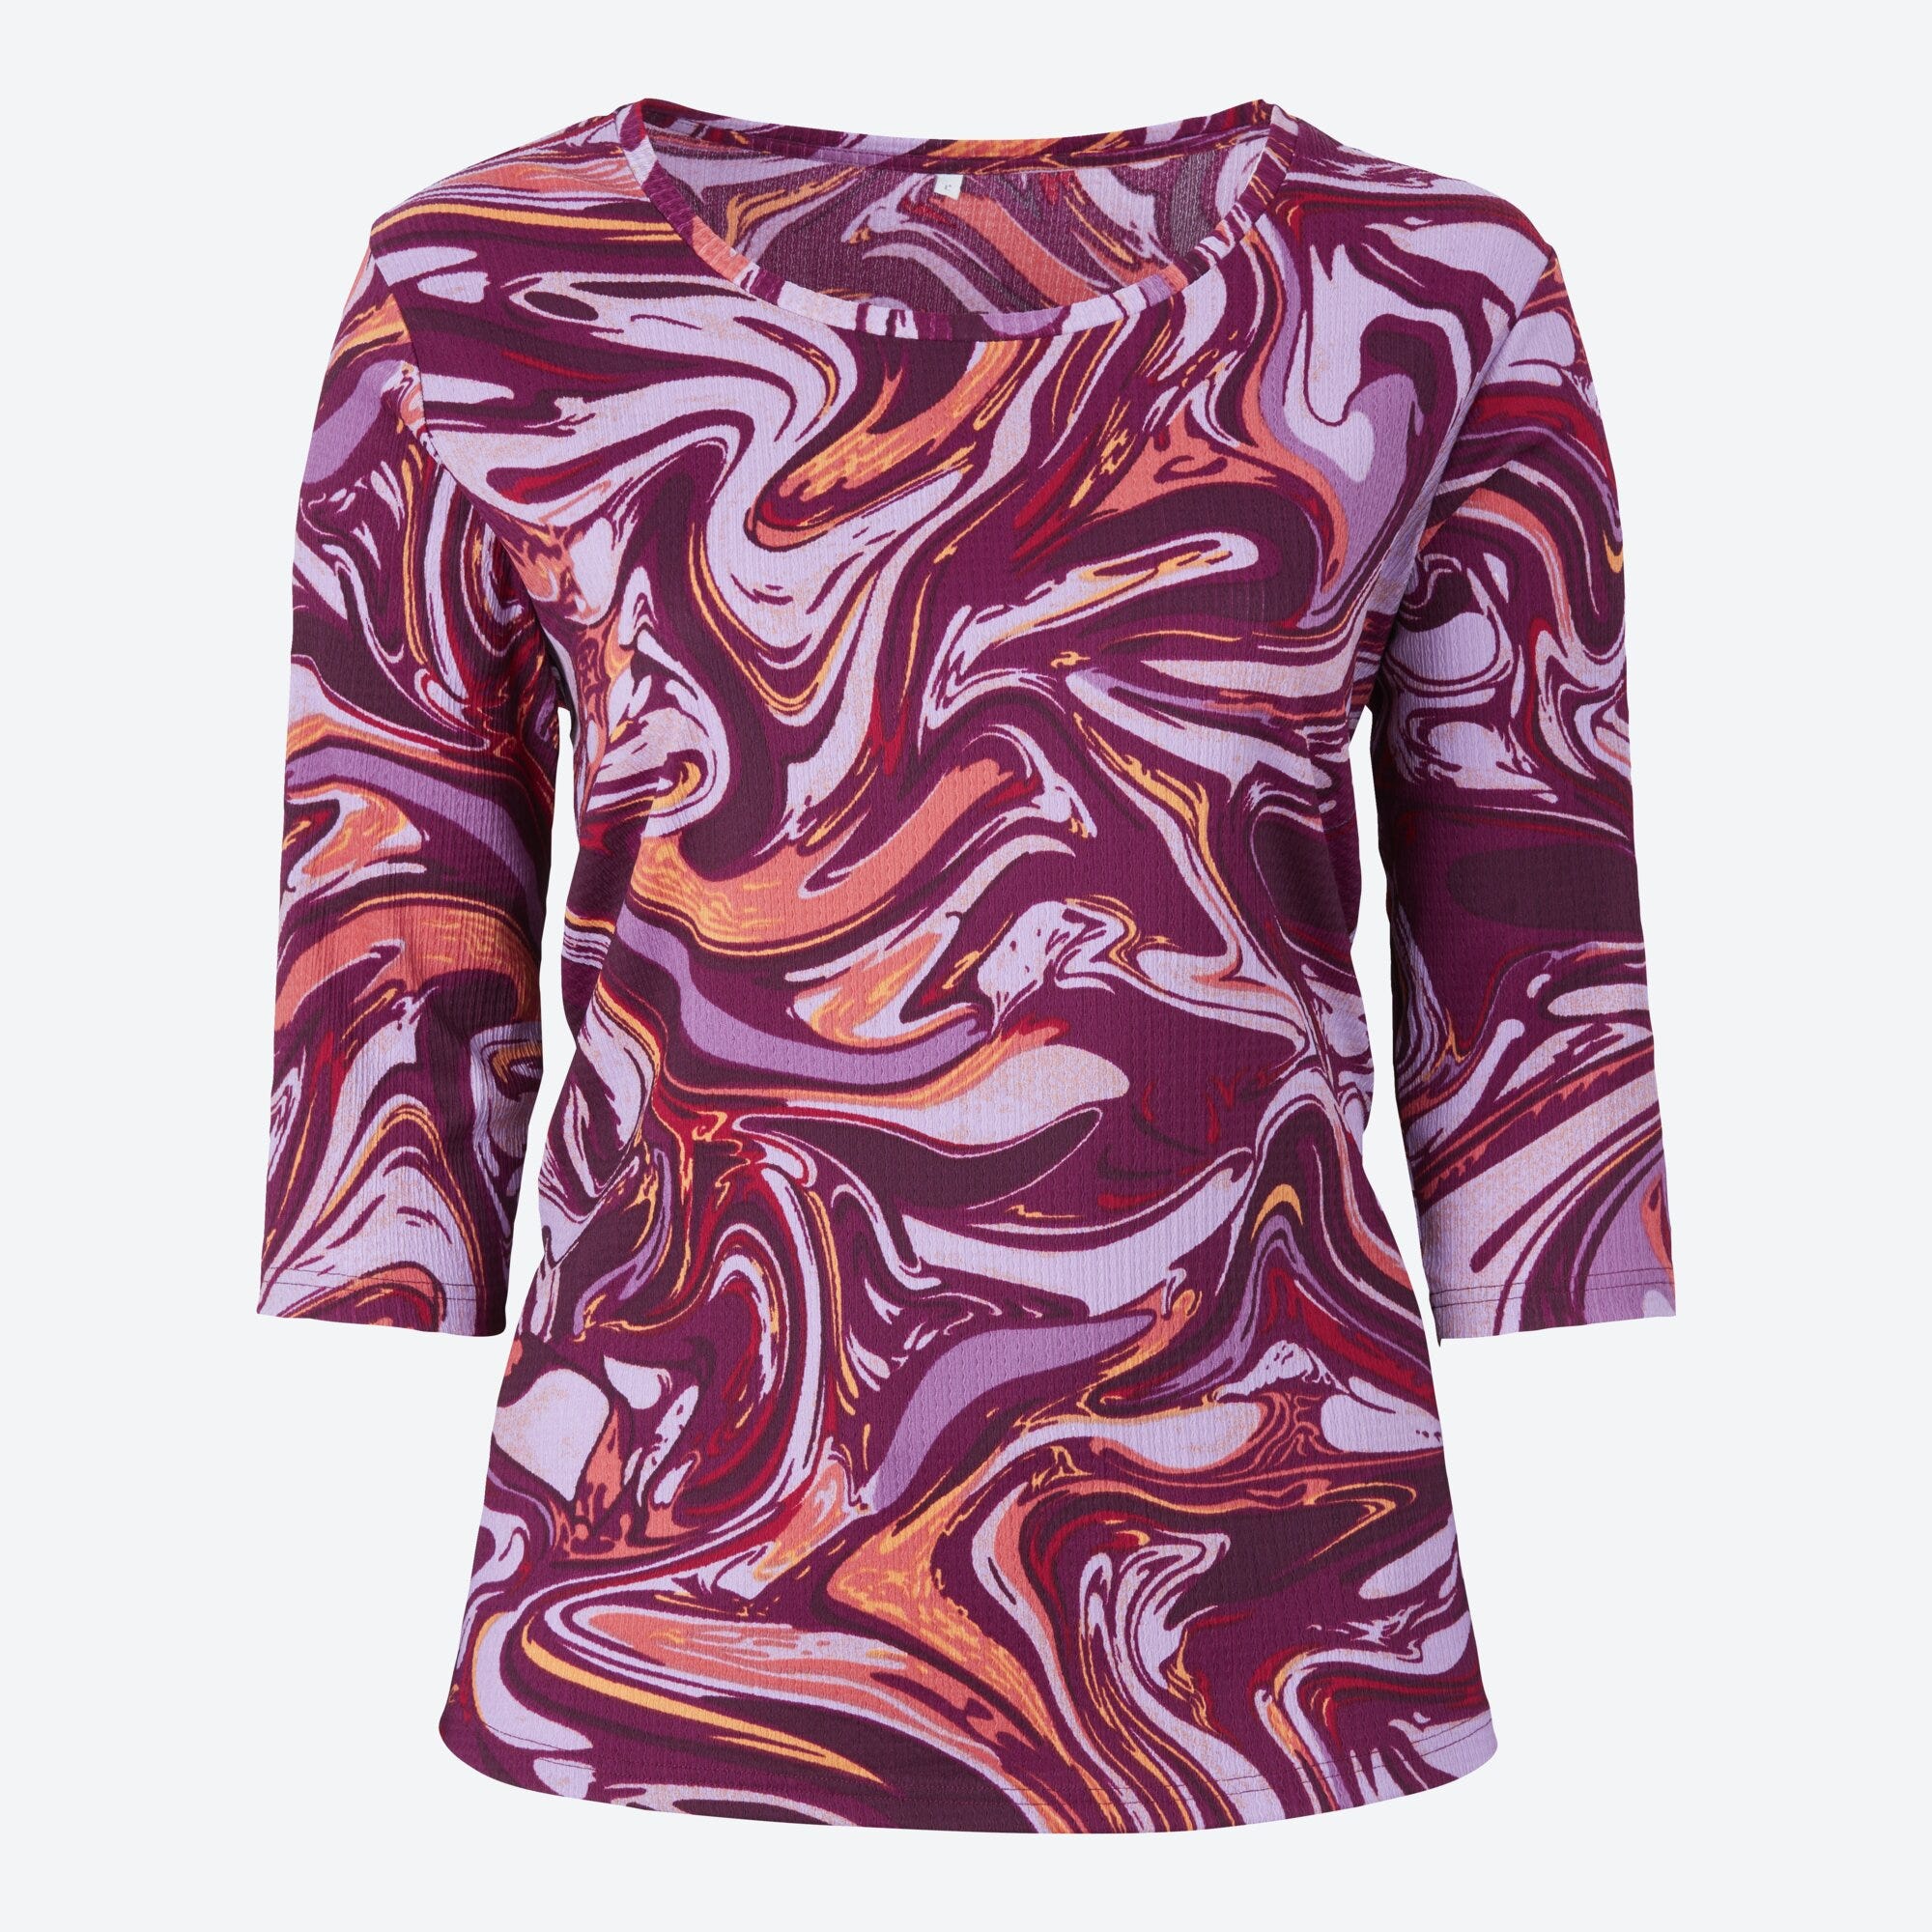 Damen-Shirt mit Trend-Muster, große Größen